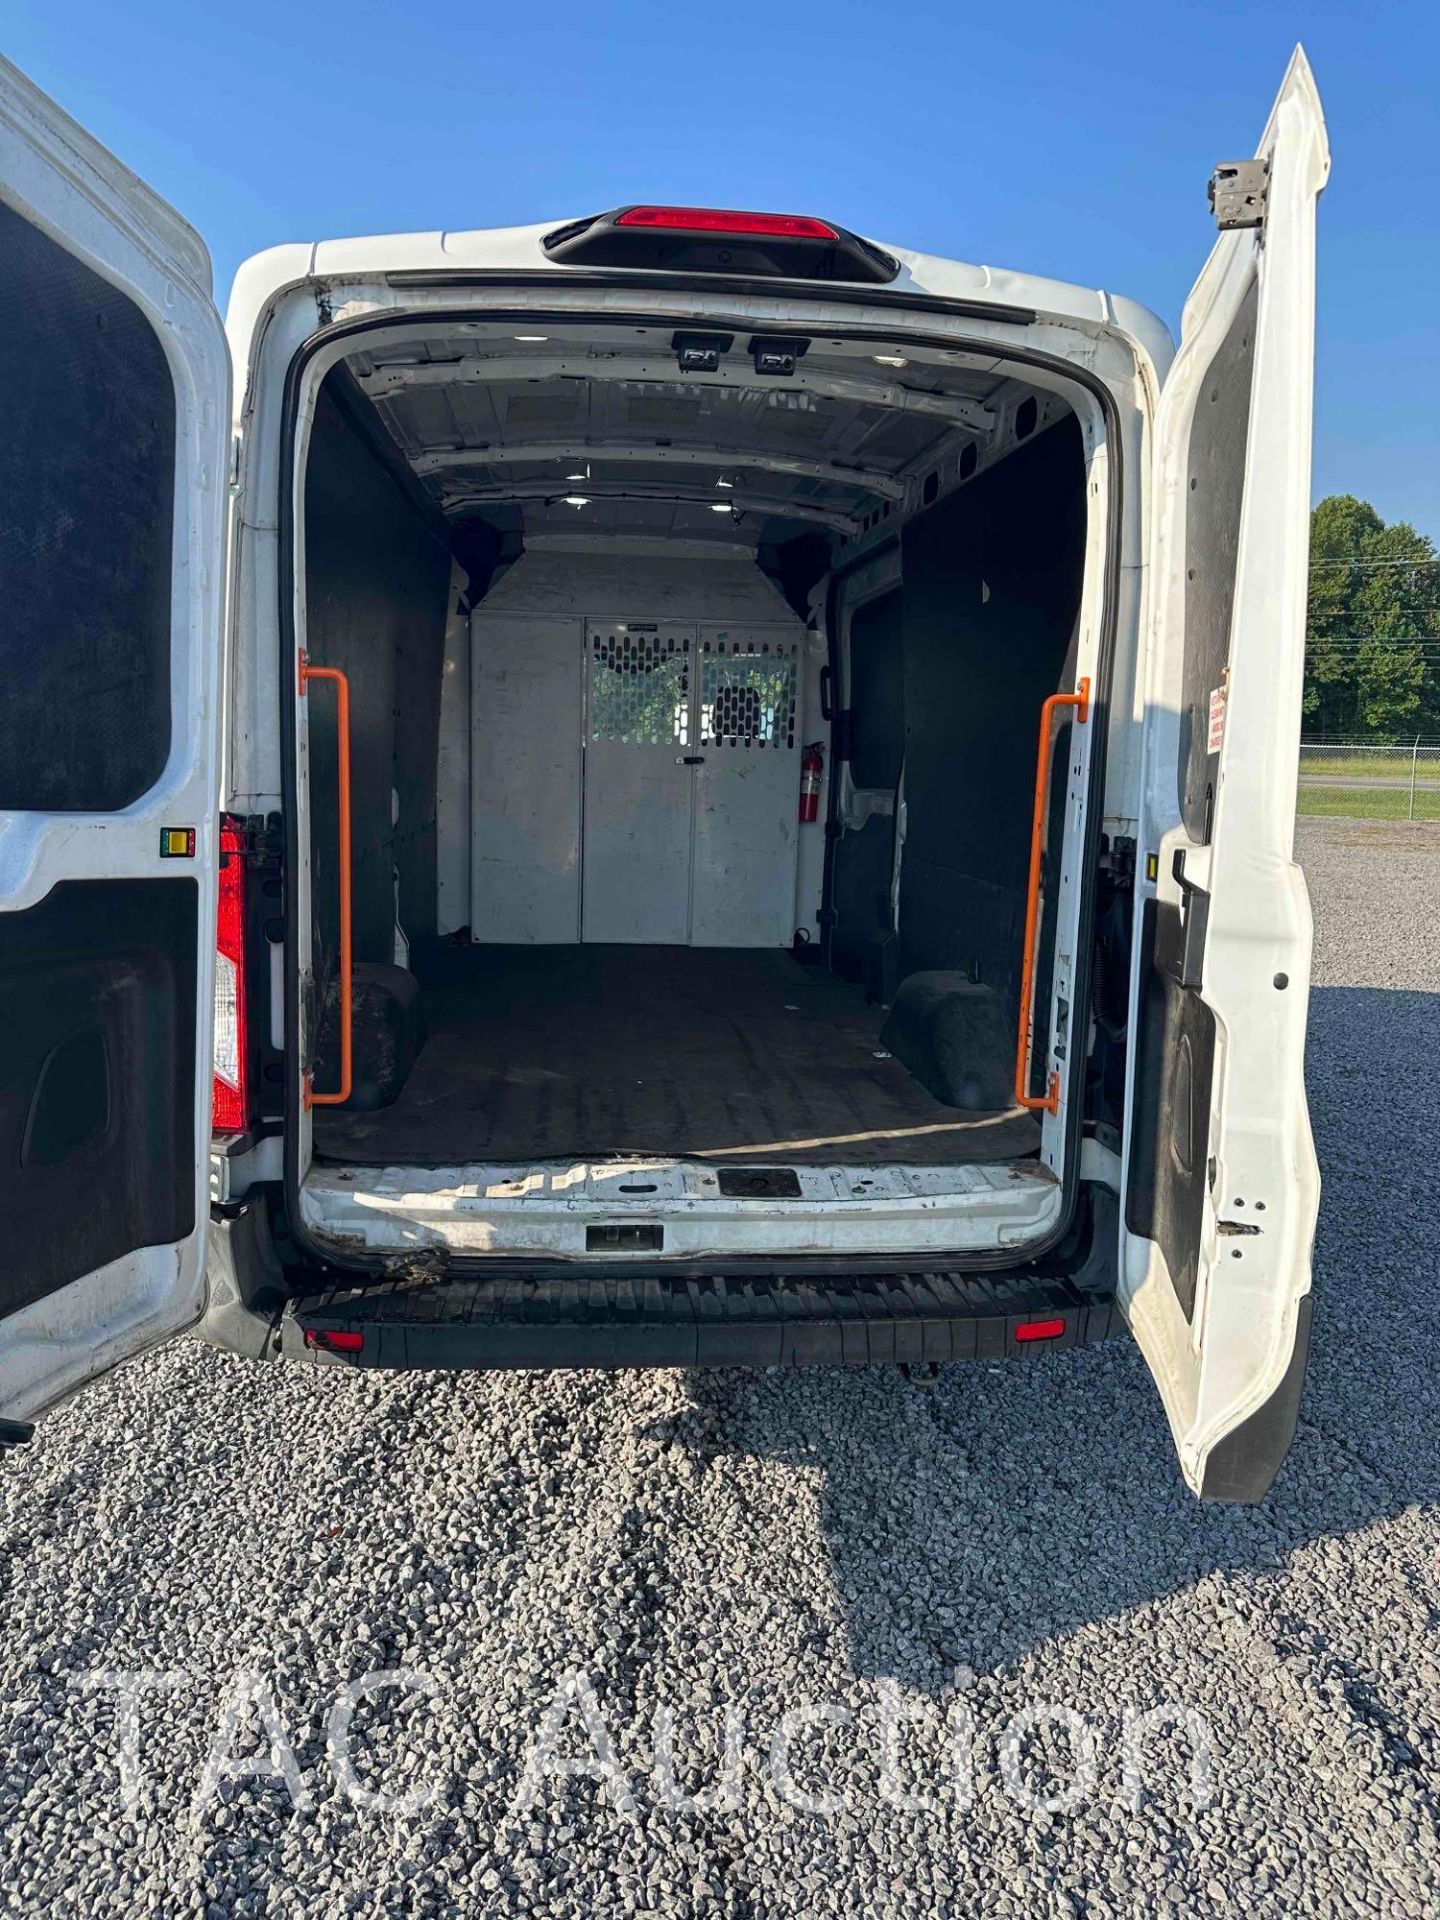 2019 Ford Transit 150 Cargo Van - Image 6 of 25